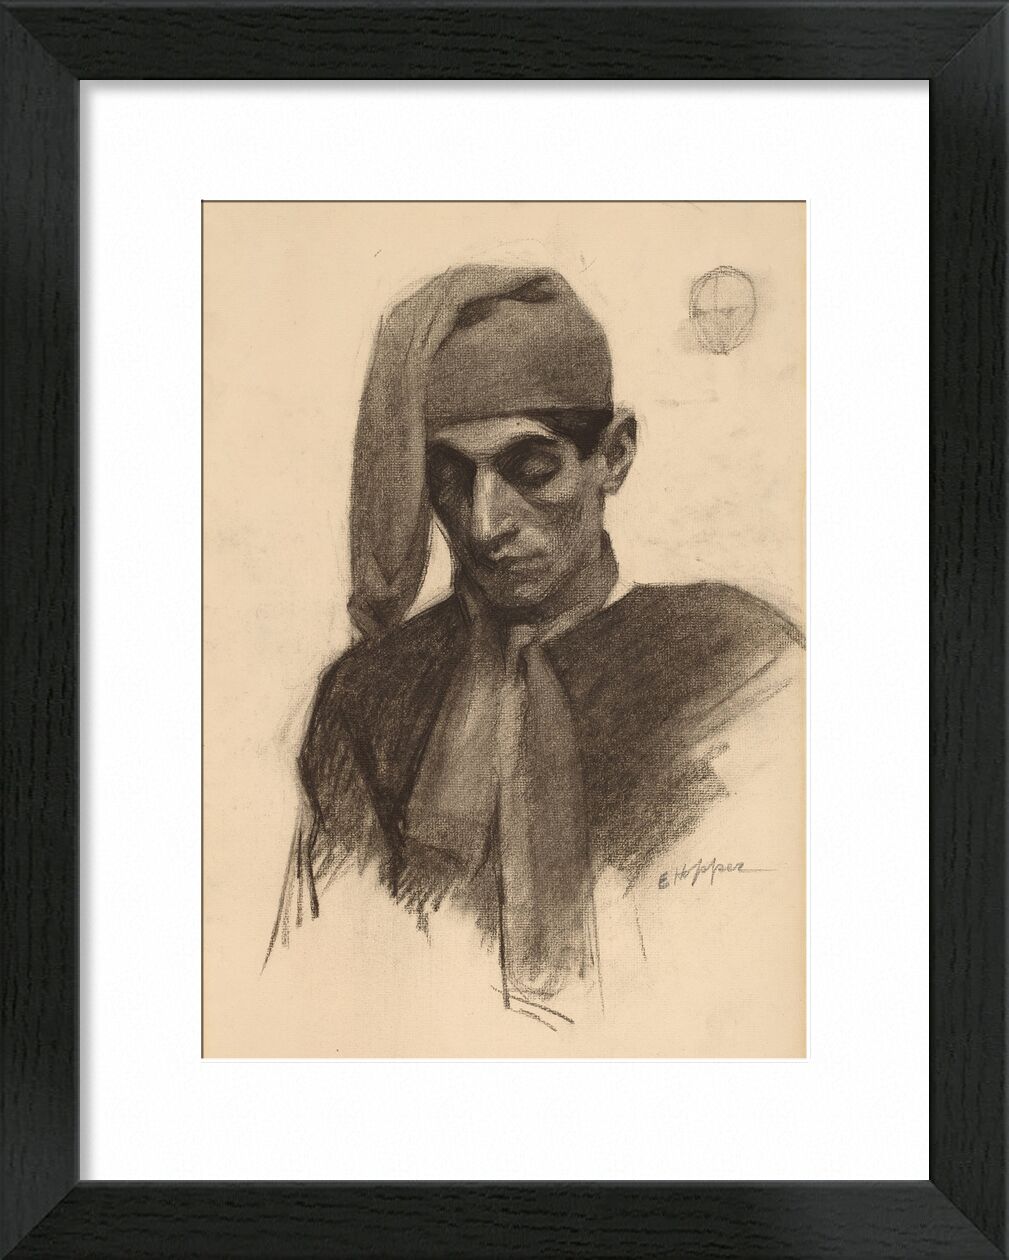 Jimmy Corsini - Edward Hopper von Bildende Kunst, Prodi Art, Porträt, Edward Hopper, Bleistift, Bleistiftzeichnung, Schwarz und weiß